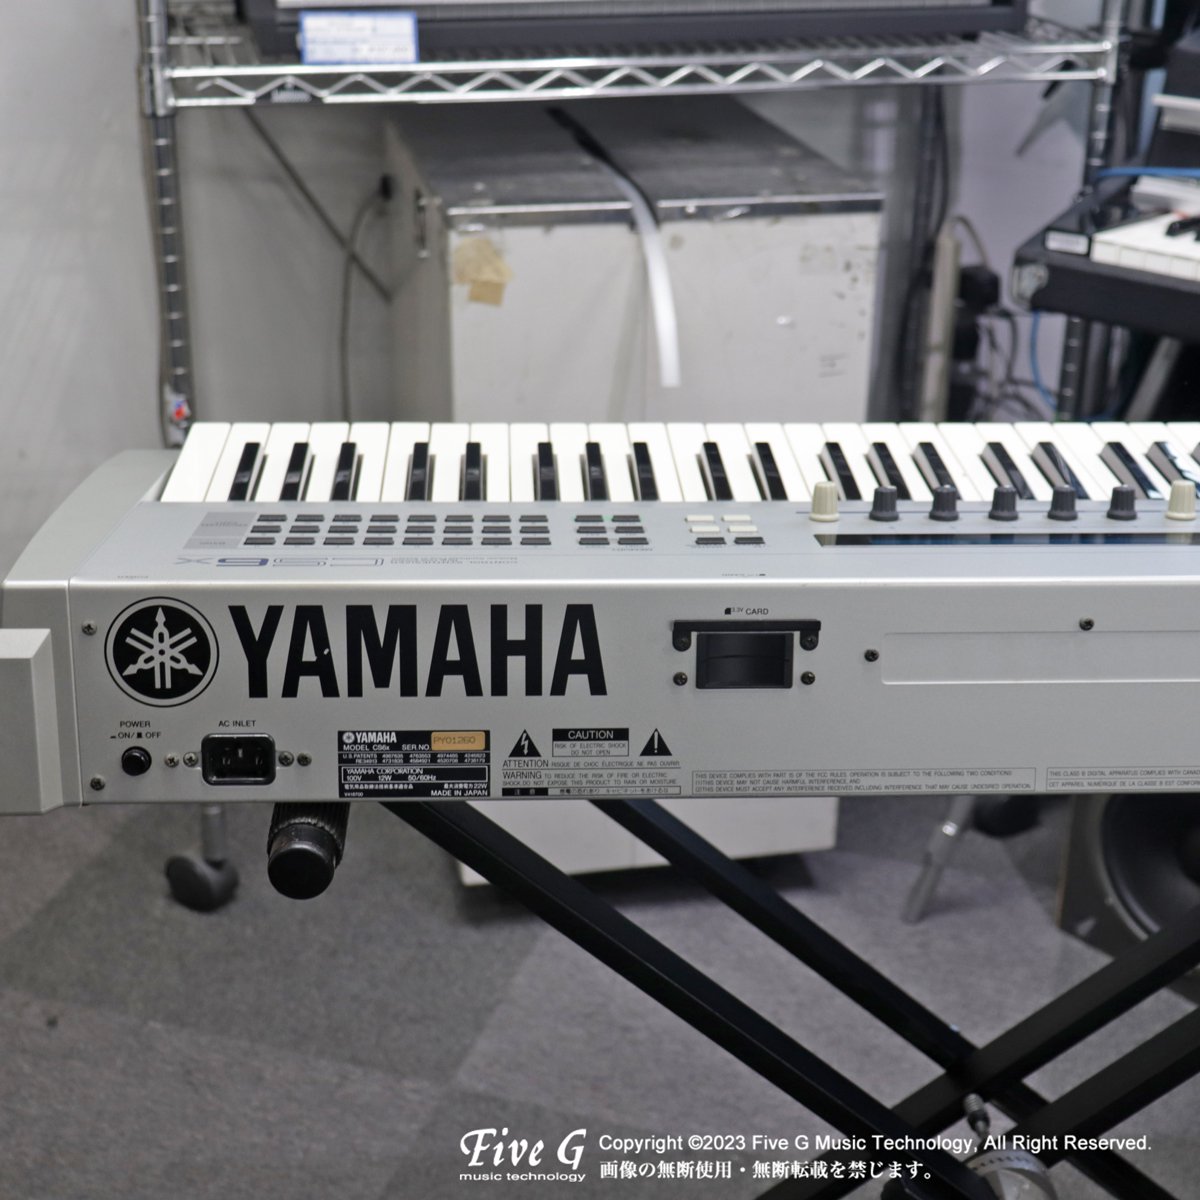 YAMAHA | CS6X | 中古 - Used - シンセサイザー キーボード | Five G